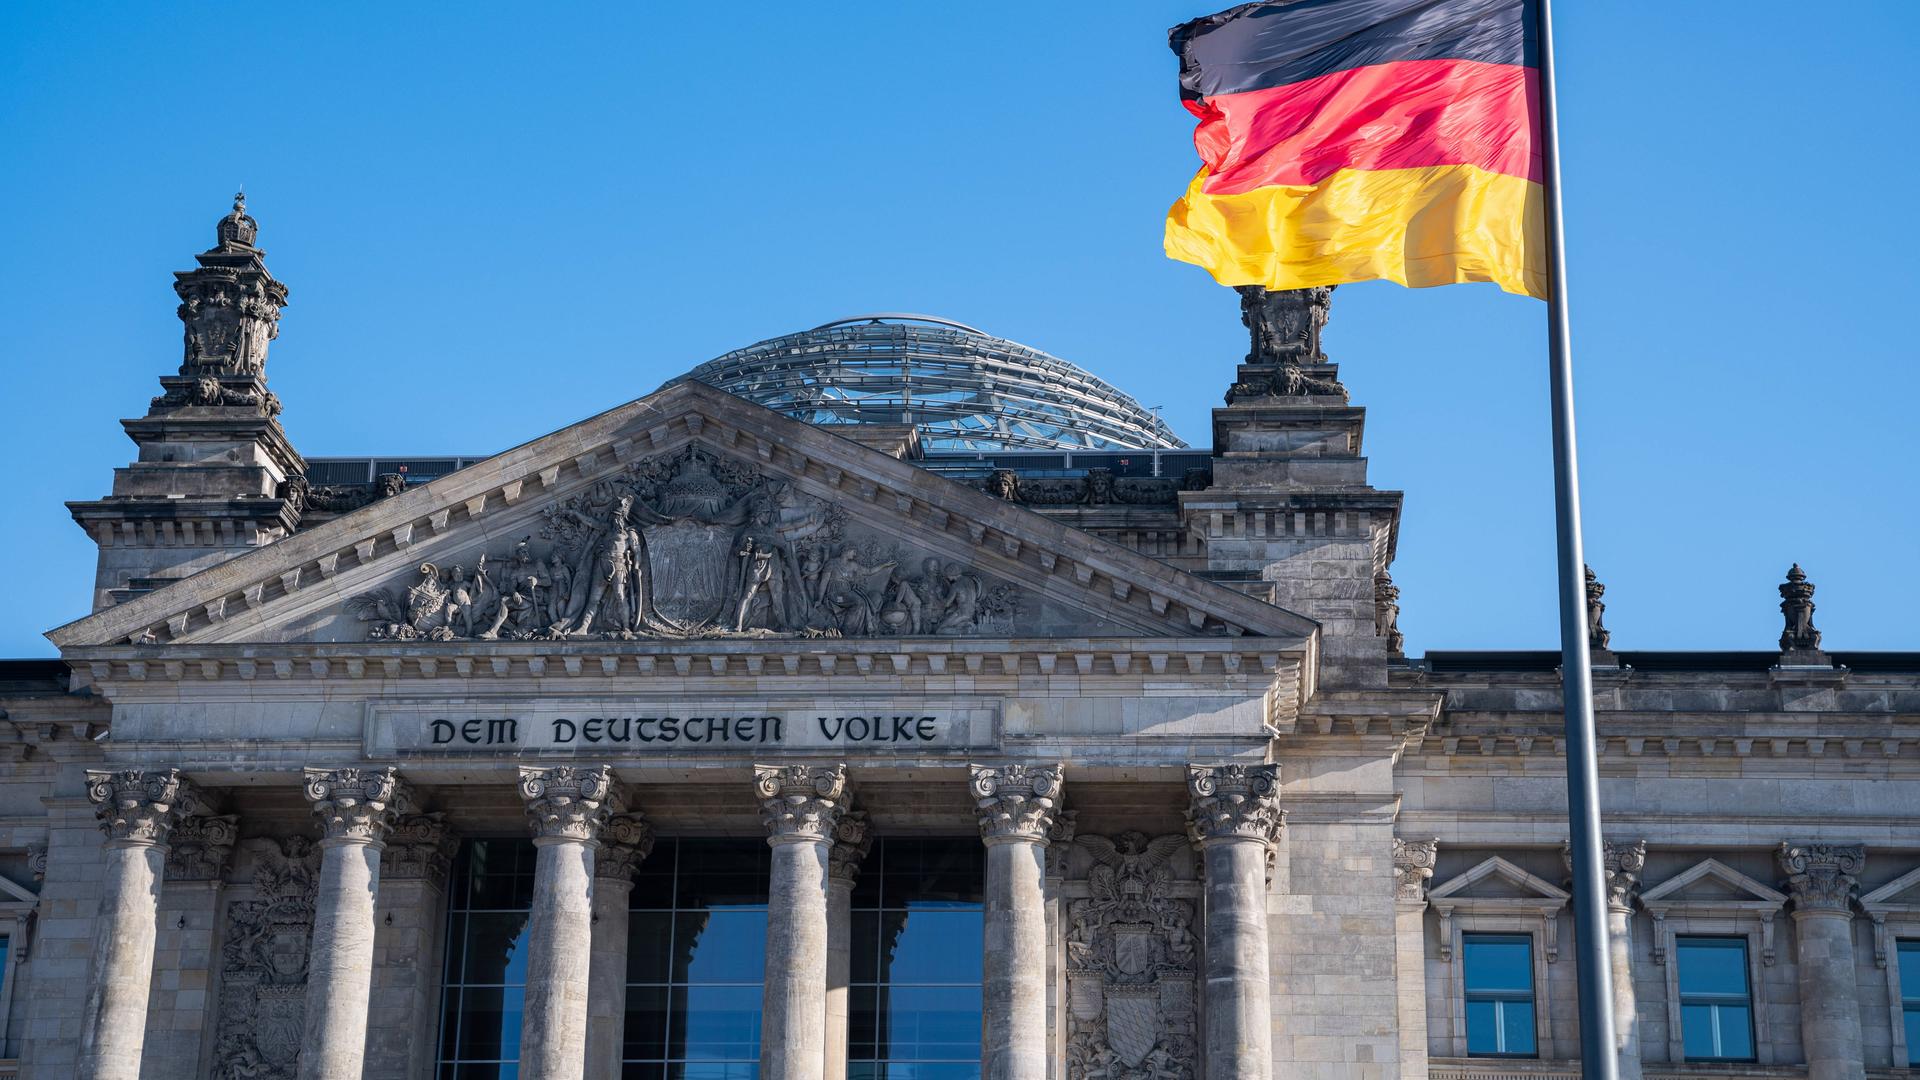 Westfassade des Reichstagsgebäudes mit dem Schriftzug Dem Deutschen Volke und einer Nationalflagge davor.